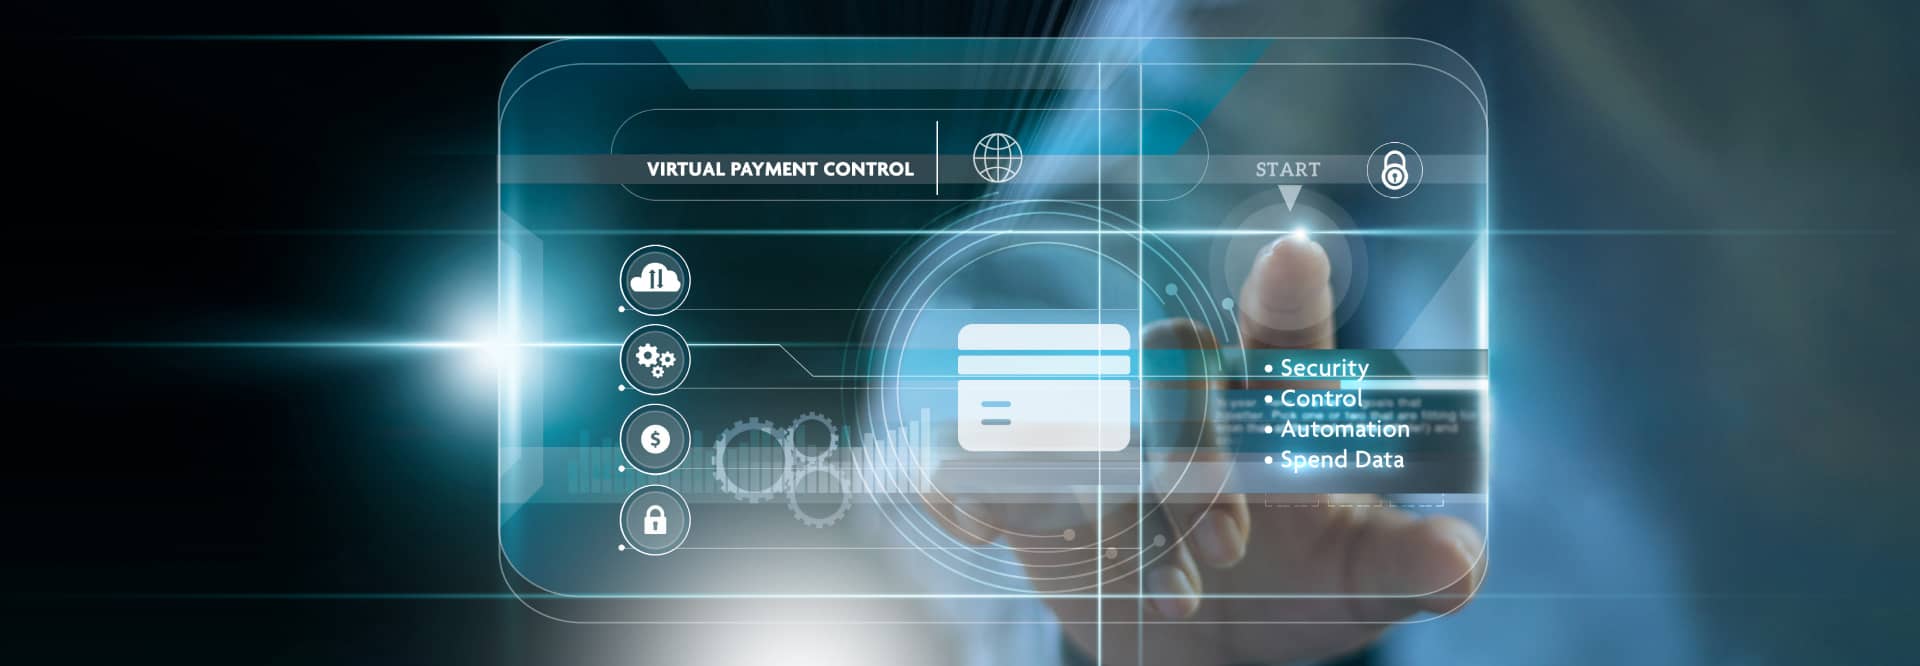 UOB Virtual Payment Control